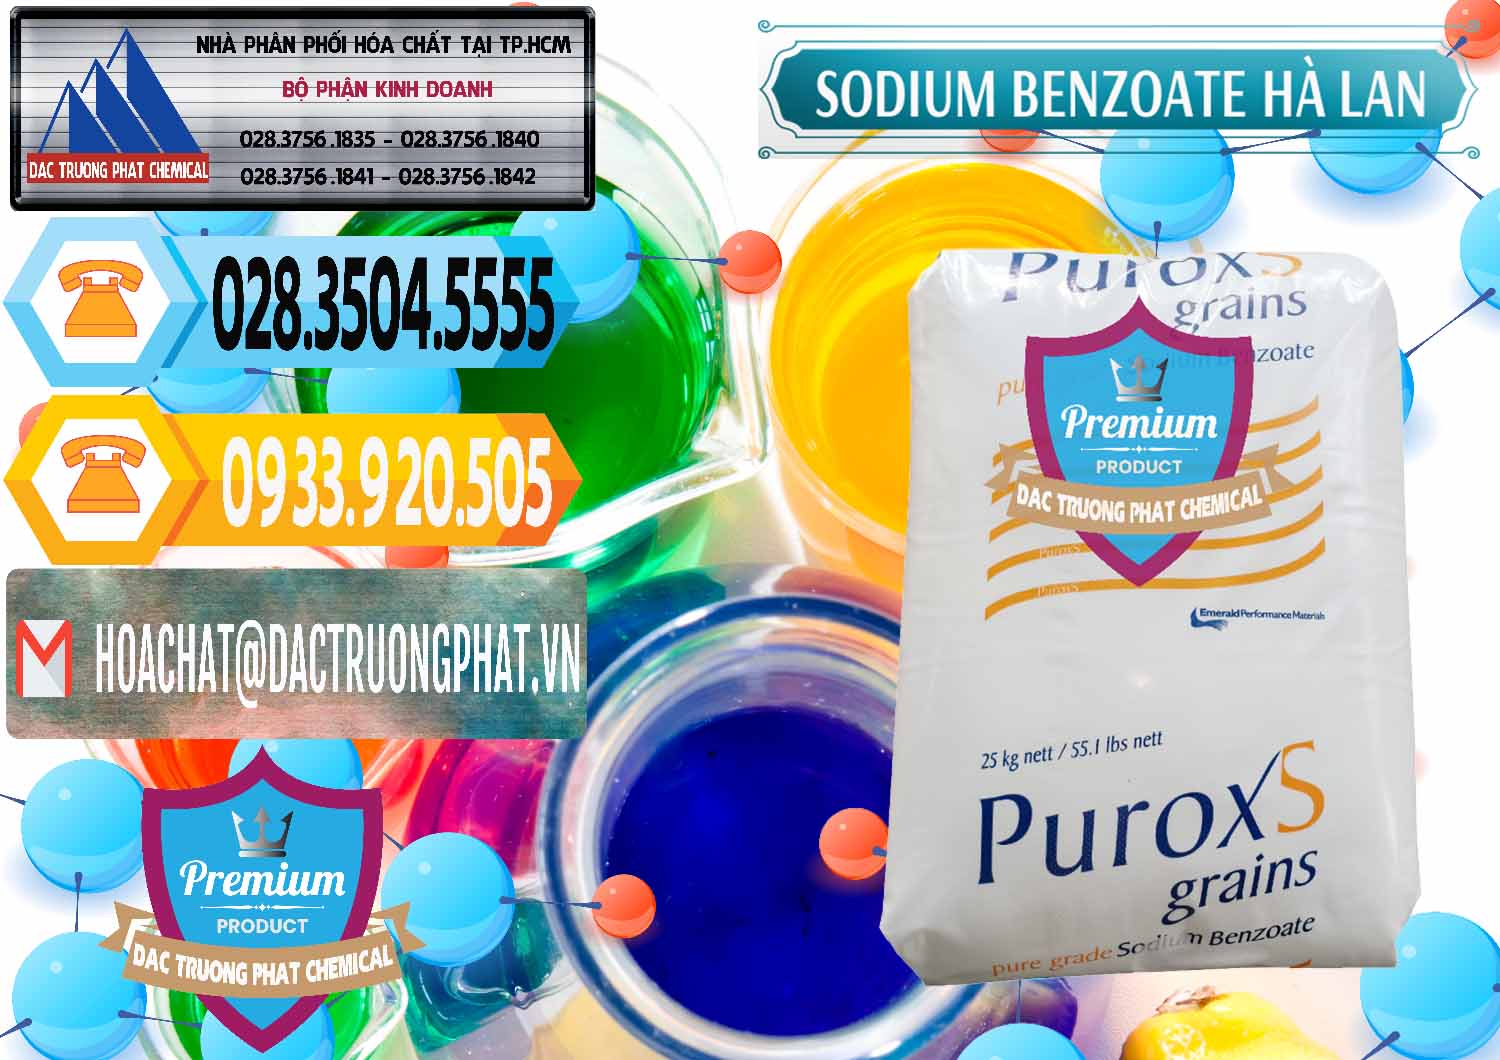 Phân phối ( bán ) Sodium Benzoate - Mốc Bột Puroxs Hà Lan Netherlands - 0467 - Cty bán - cung cấp hóa chất tại TP.HCM - hoachattayrua.net